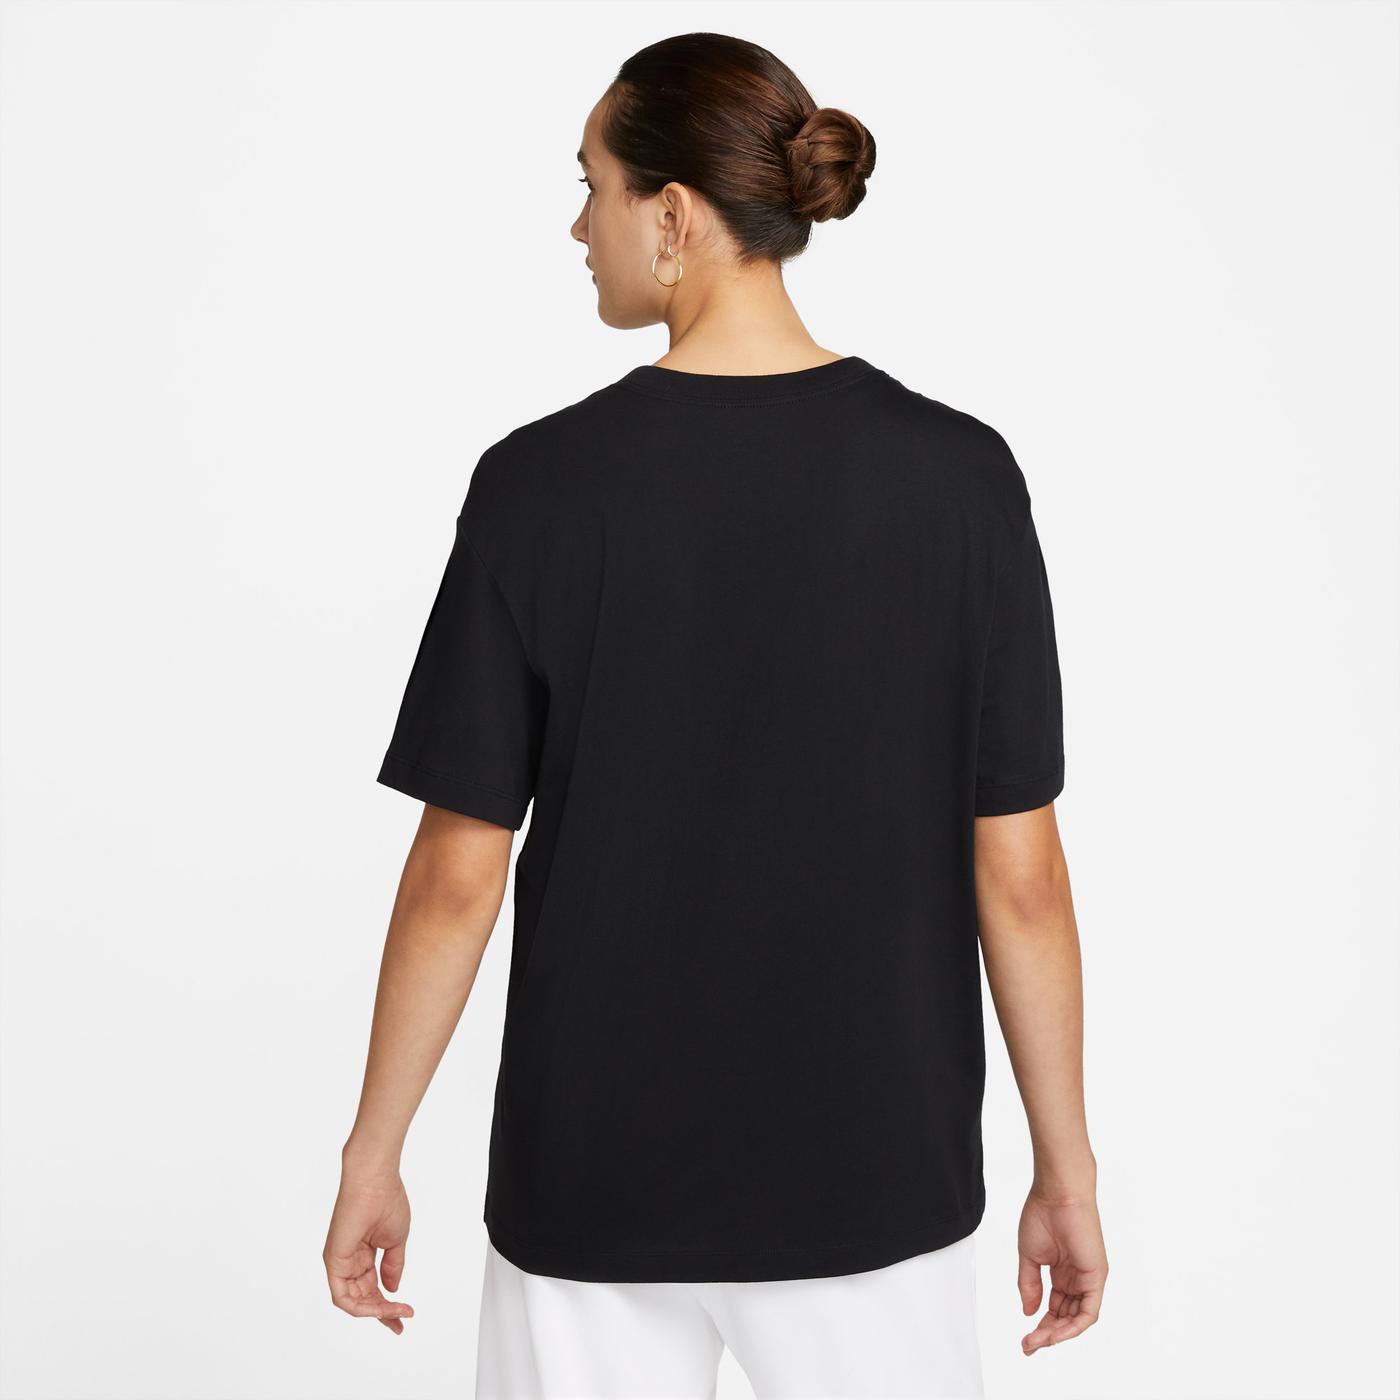 Nike Sportswear Kadın Siyah T-Shirt